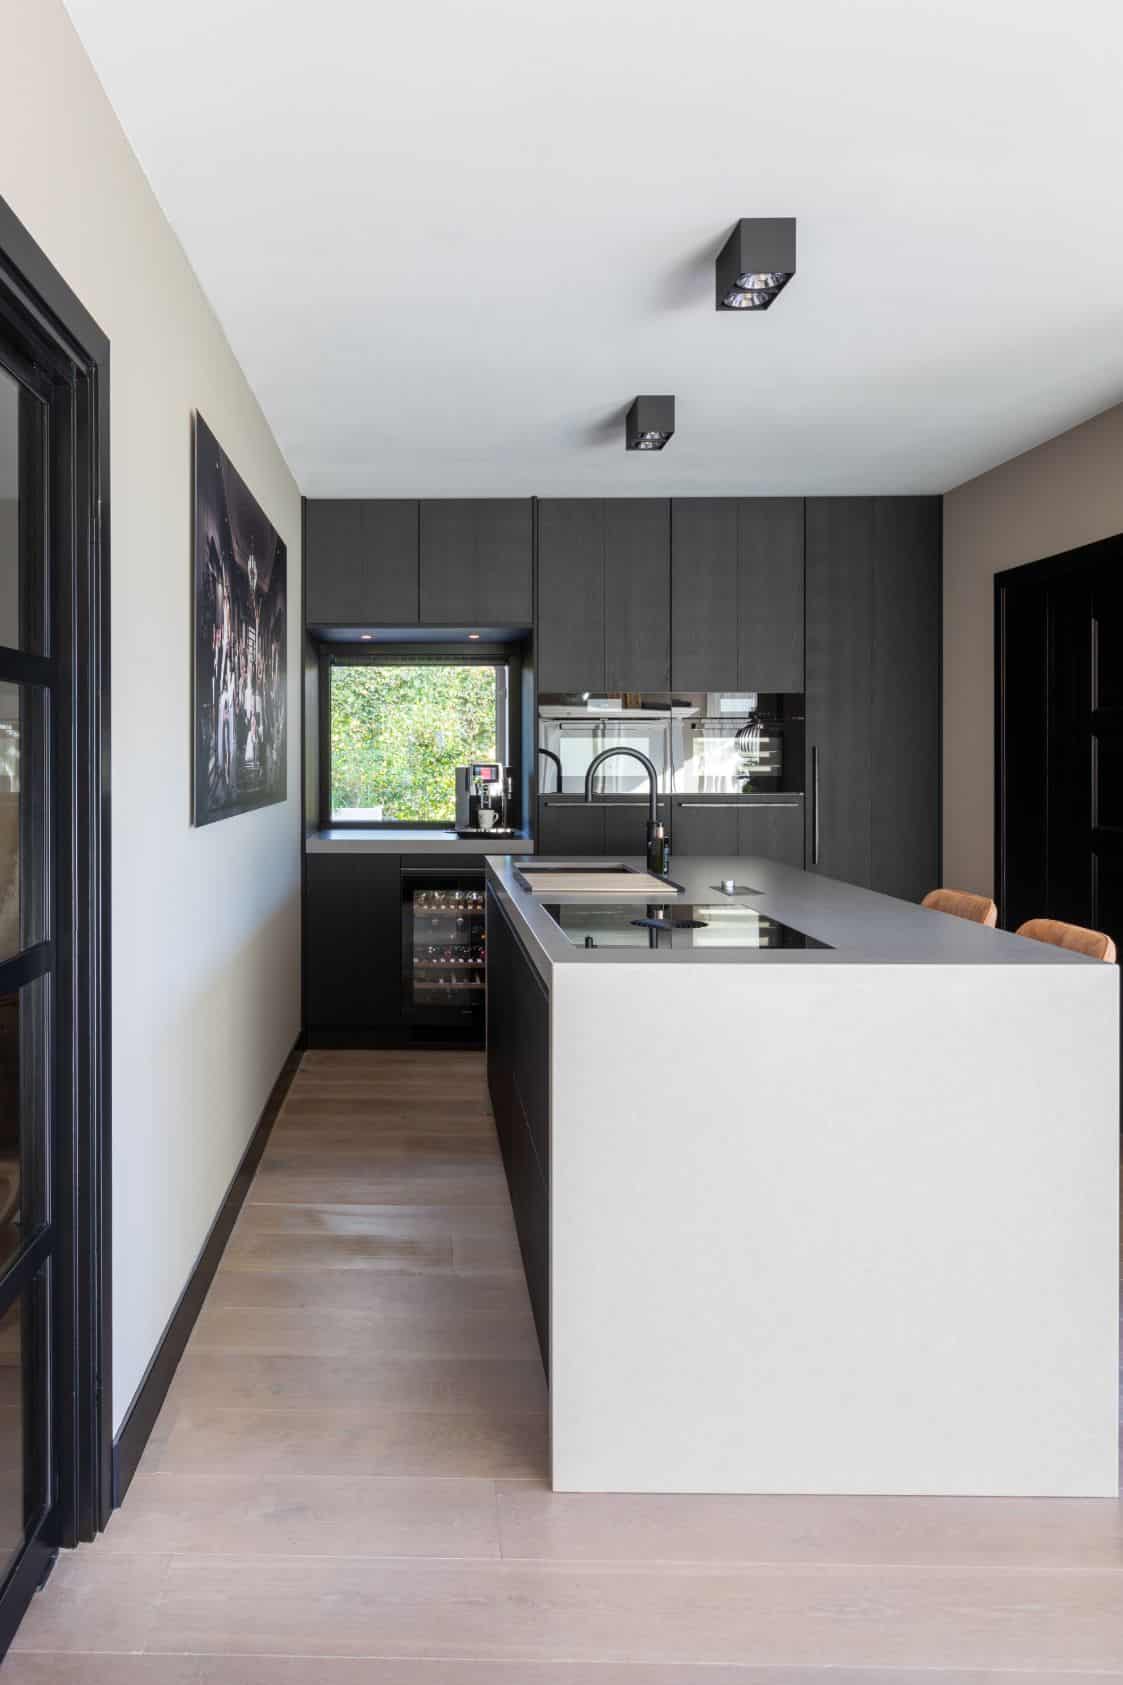 zwart grijze keuken met kookeiland van loenen van ginkel keukens 003